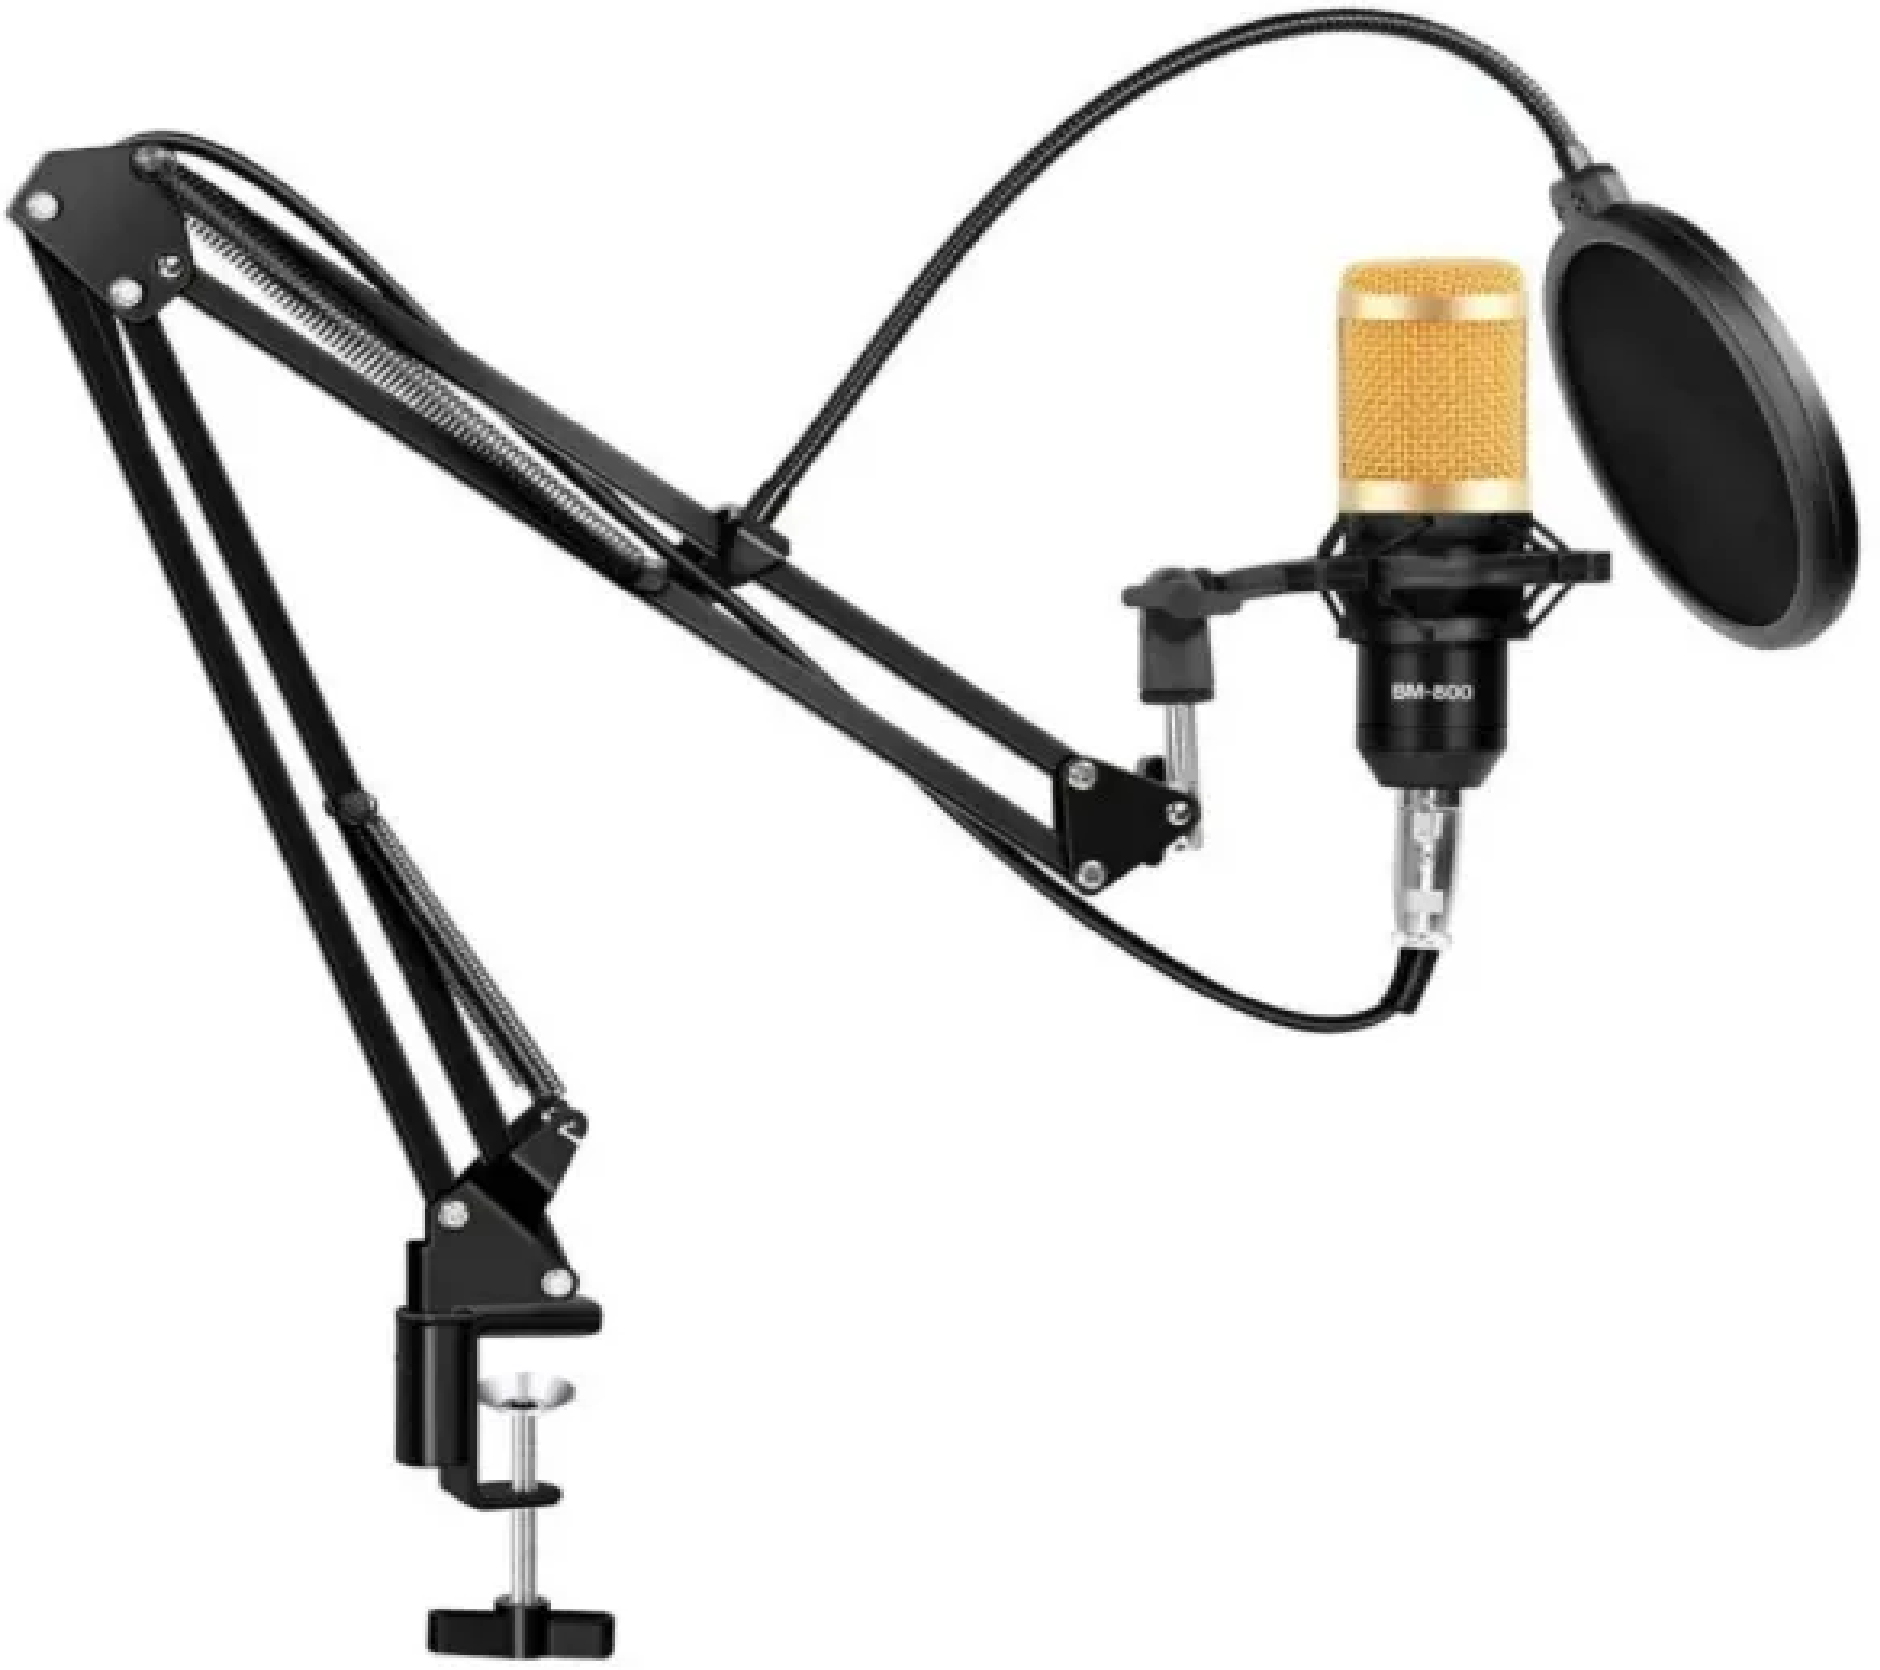 Cтойка для микрофона пантограф с поп-фильтром, держателем и усиленной струбциной Держатель настольный